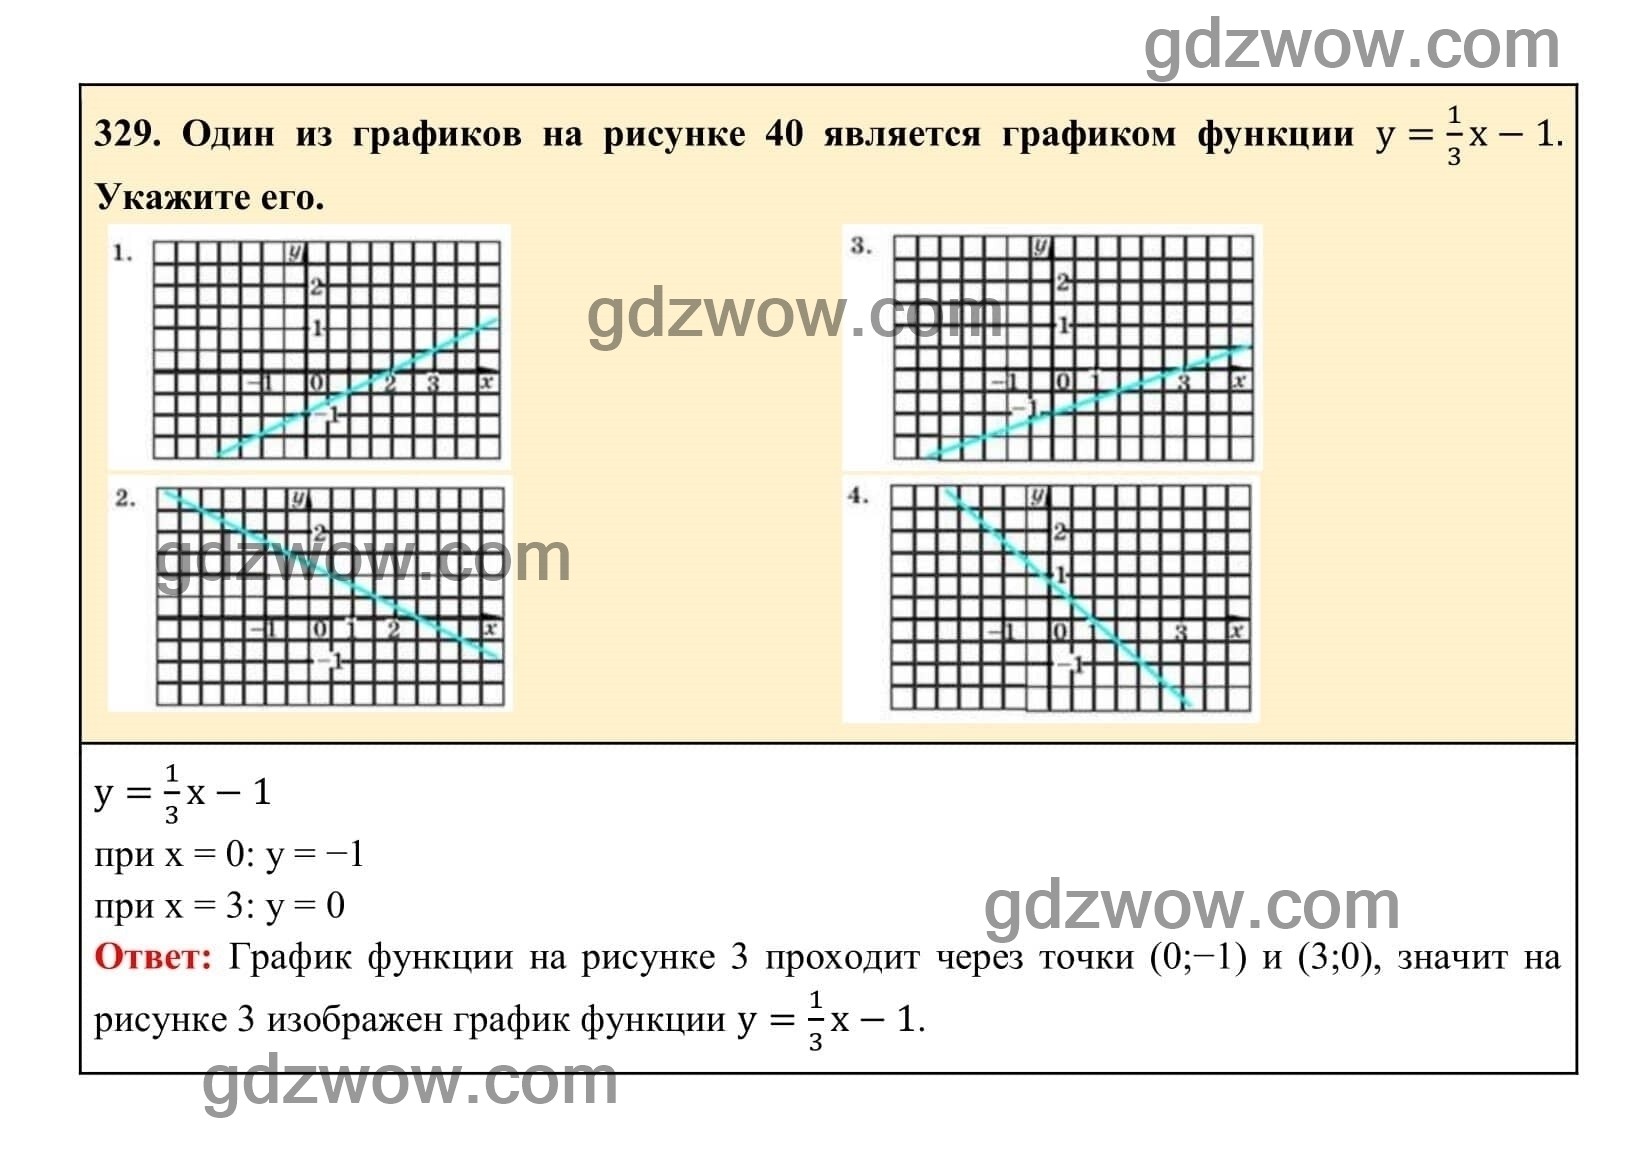 Упражнение 329 - ГДЗ по Алгебре 7 класс Учебник Макарычев (решебник) - GDZwow